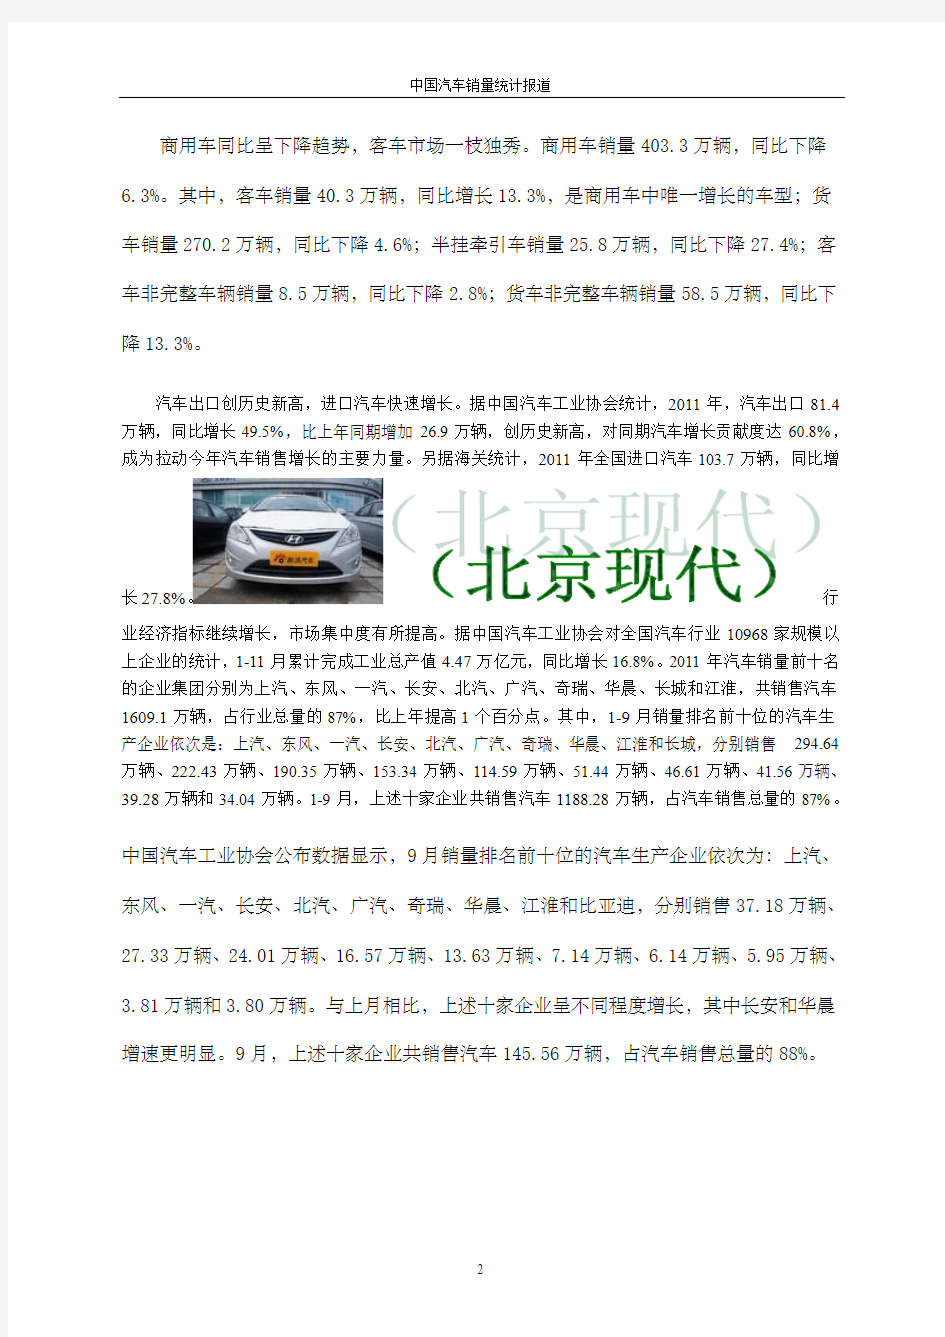 中国汽车销量统计报道